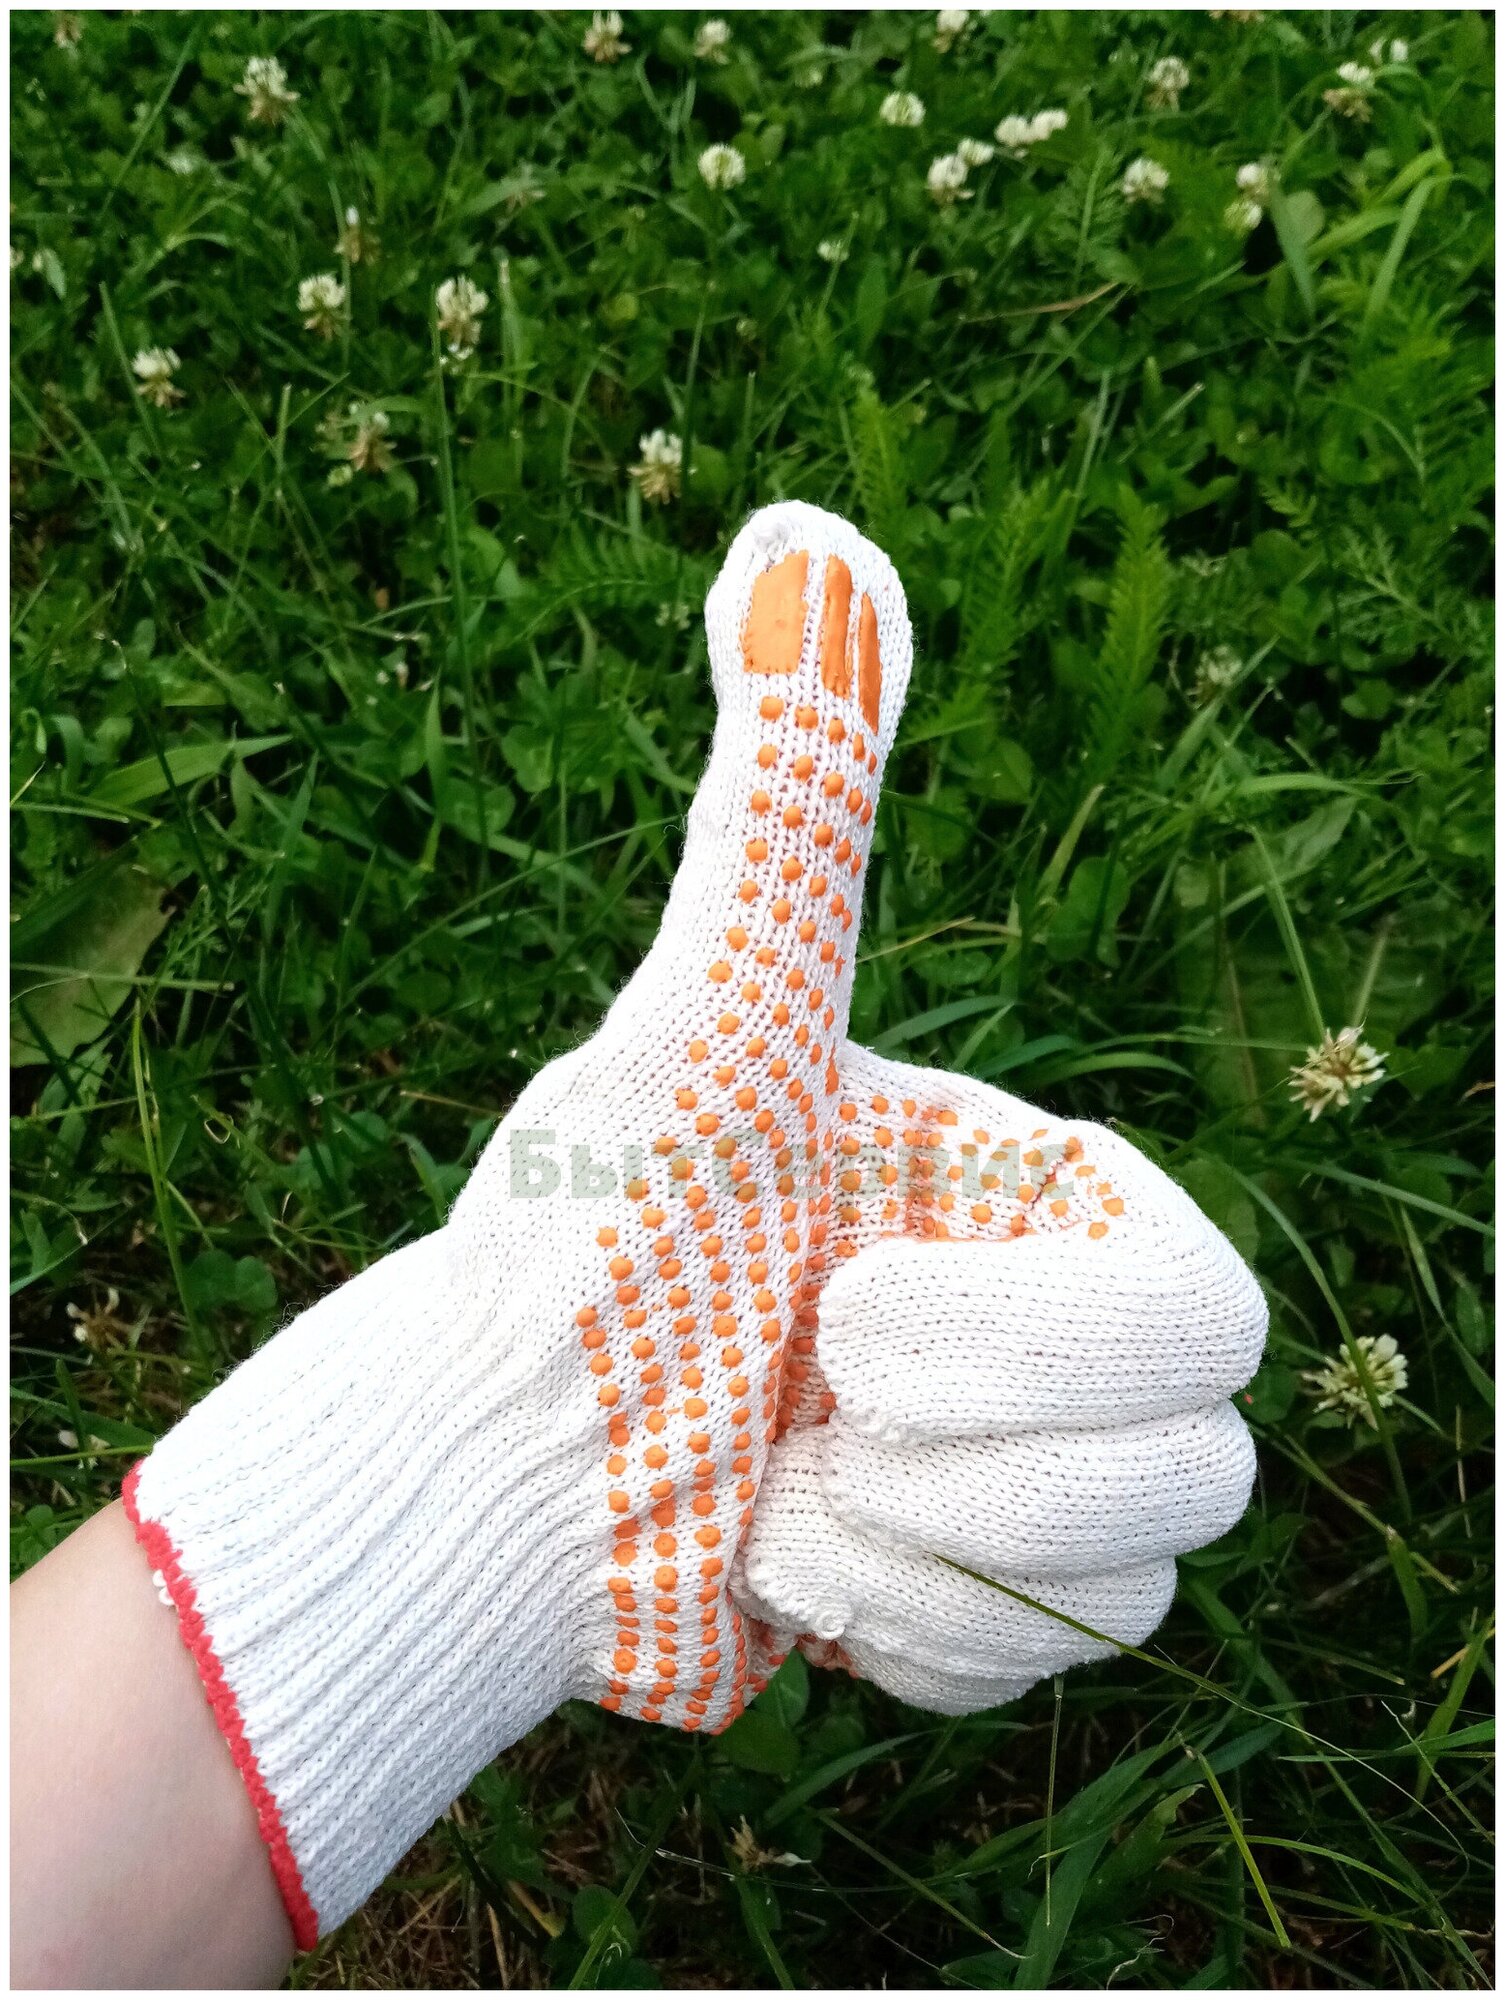 Перчатки рабочие набор 10 штук перчатки хозяйственные белые ХБ перчатки для сада и ремонта.